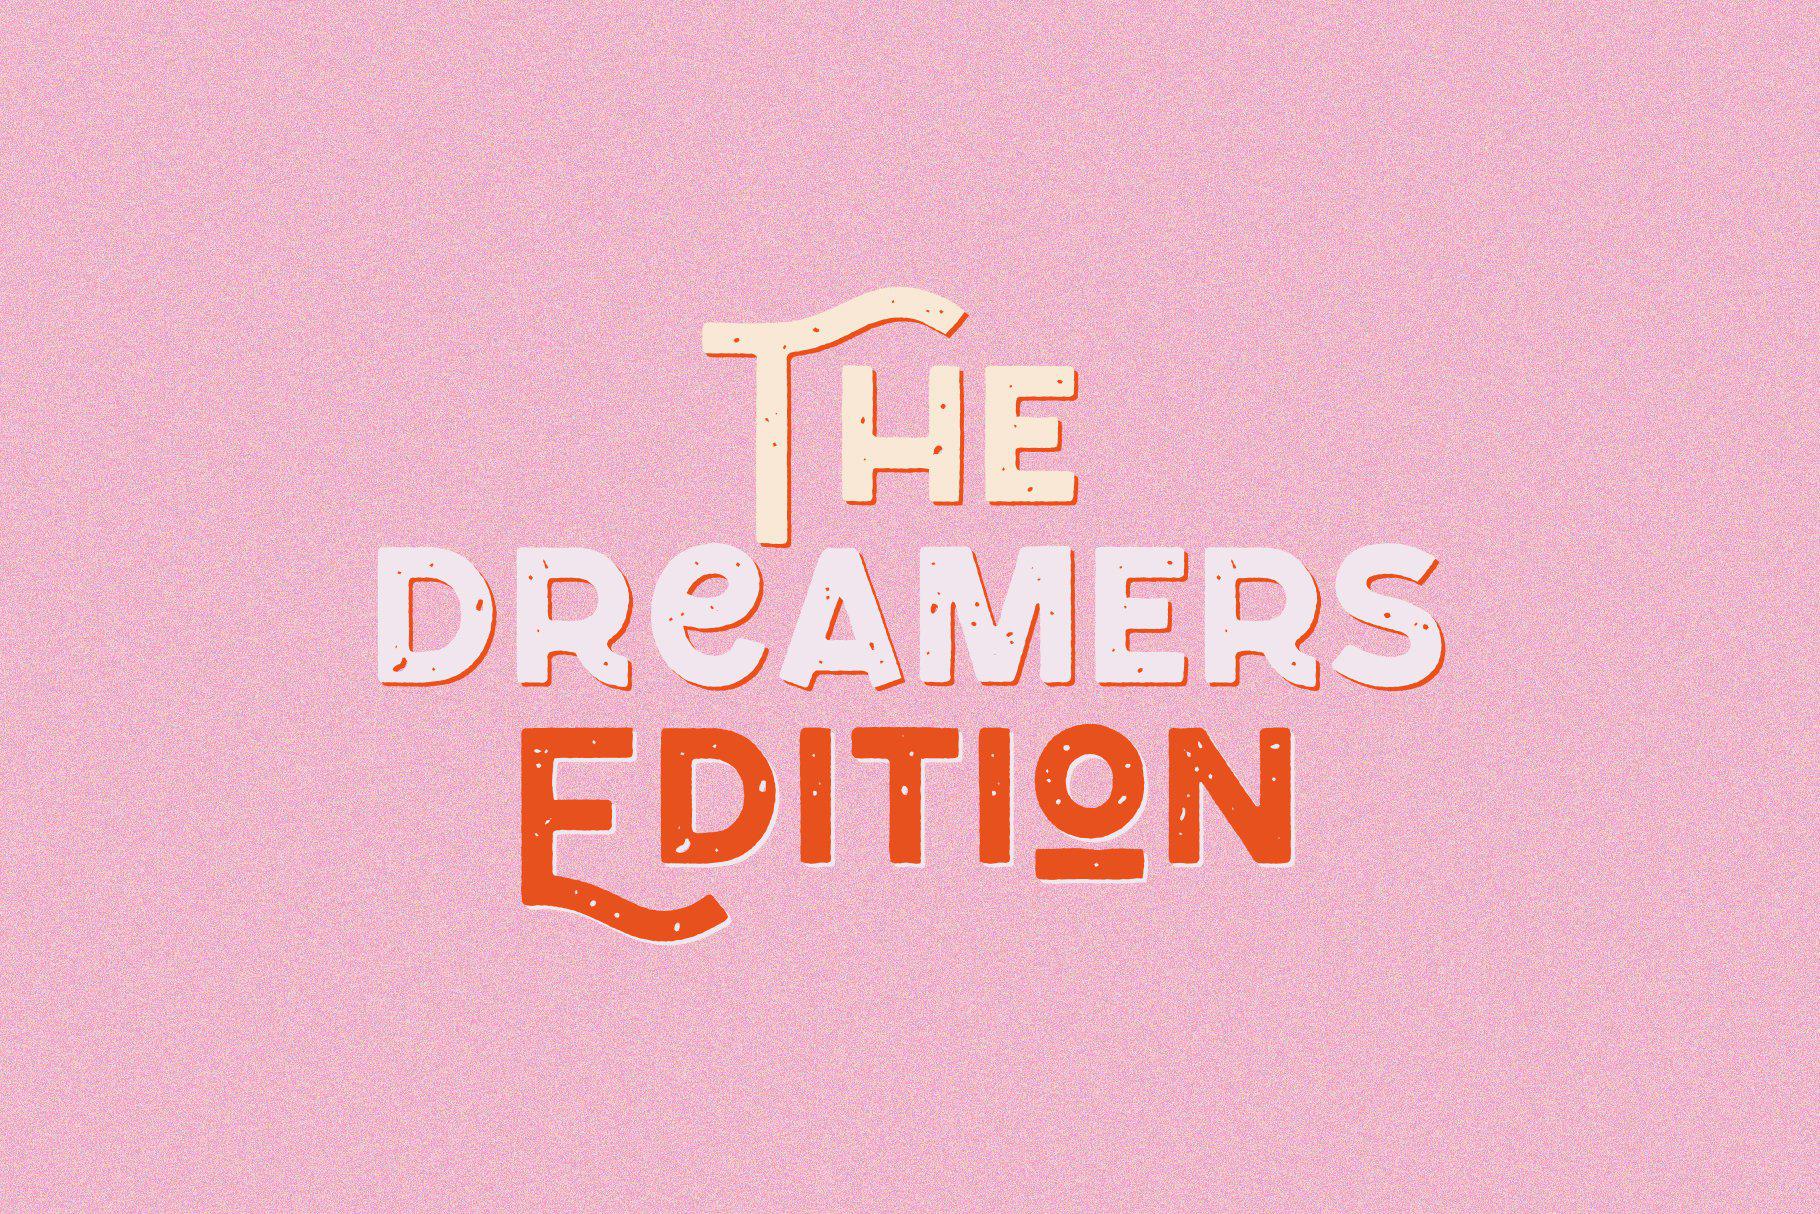 Dreamer's Edition